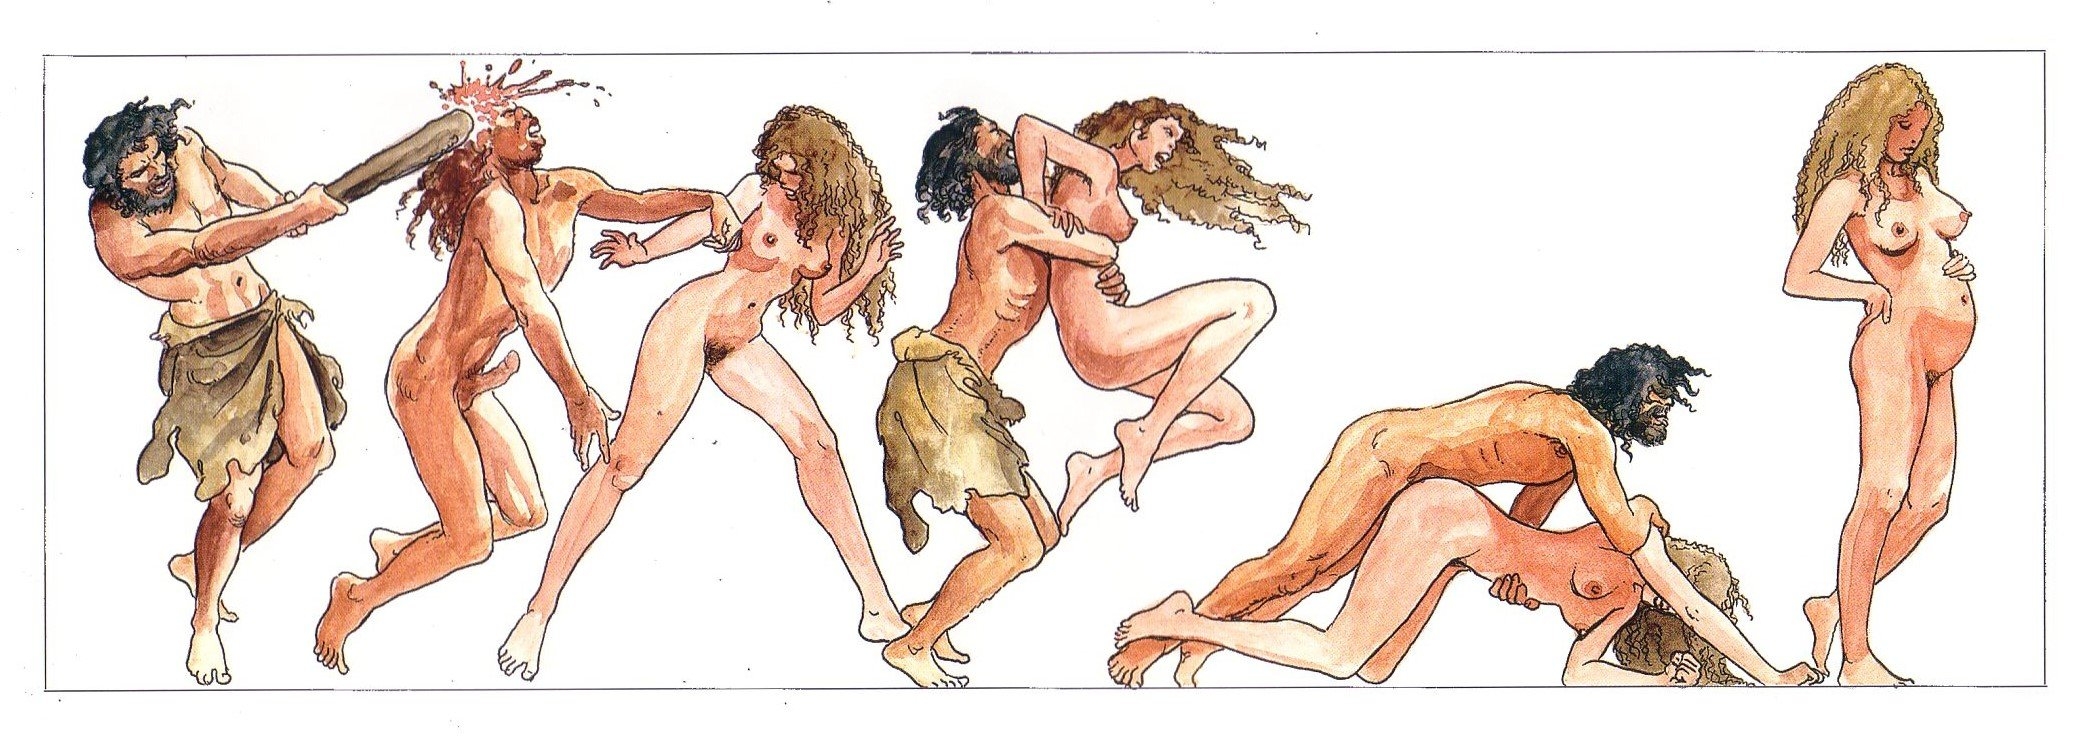 Древний секс. Смотреть онлайн порно видео на поддоноптом.рф